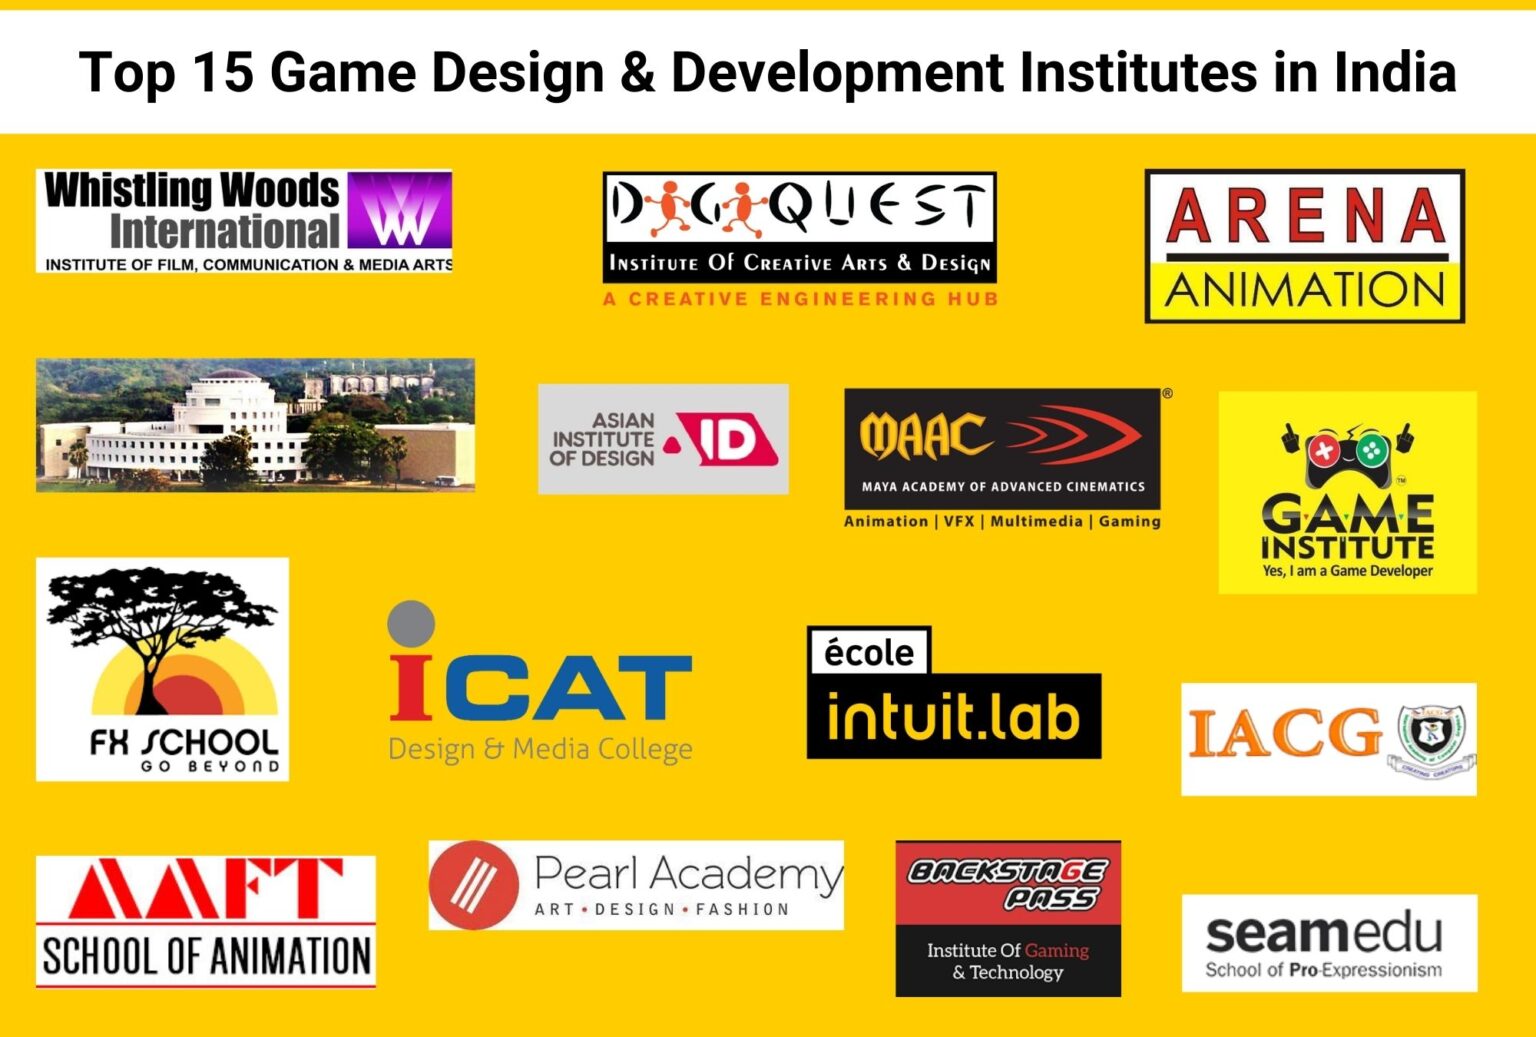 Top Game Design and Development Institutes in India